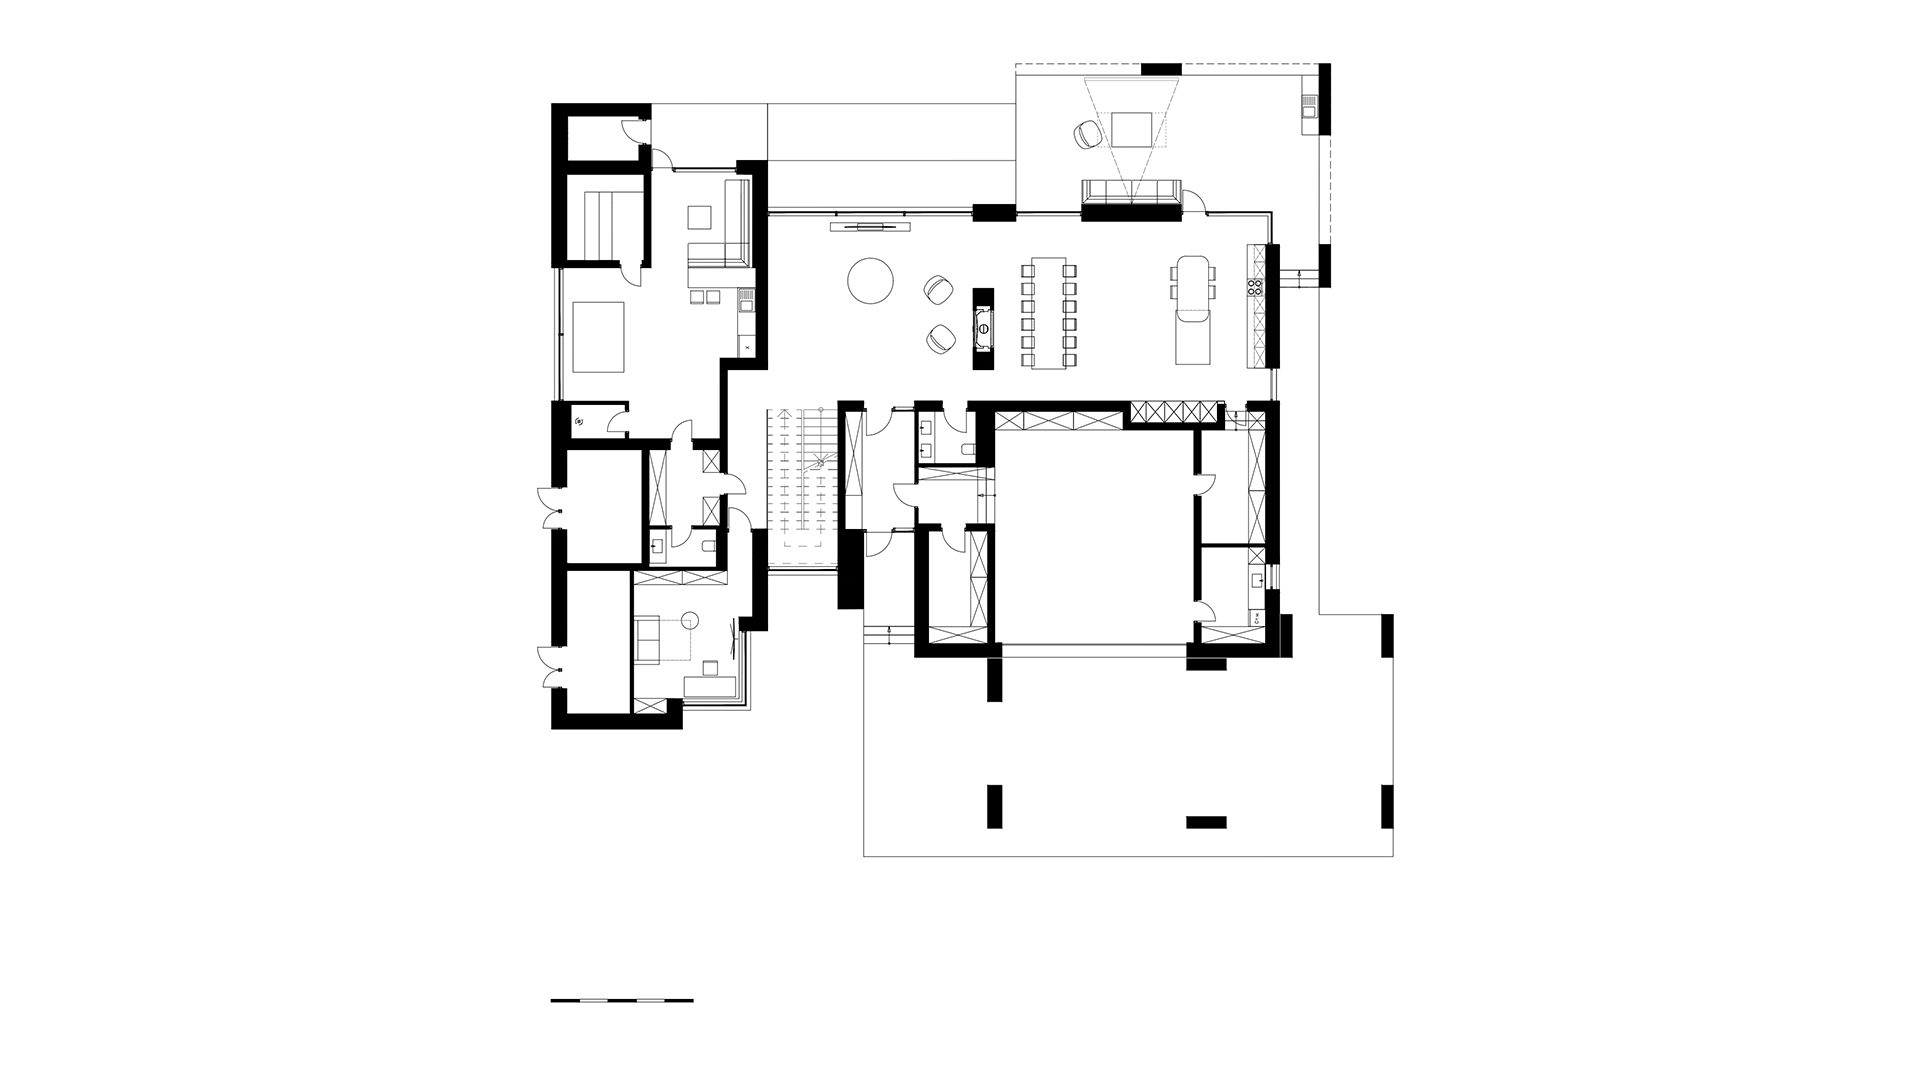 Планировка двухэтажного дома